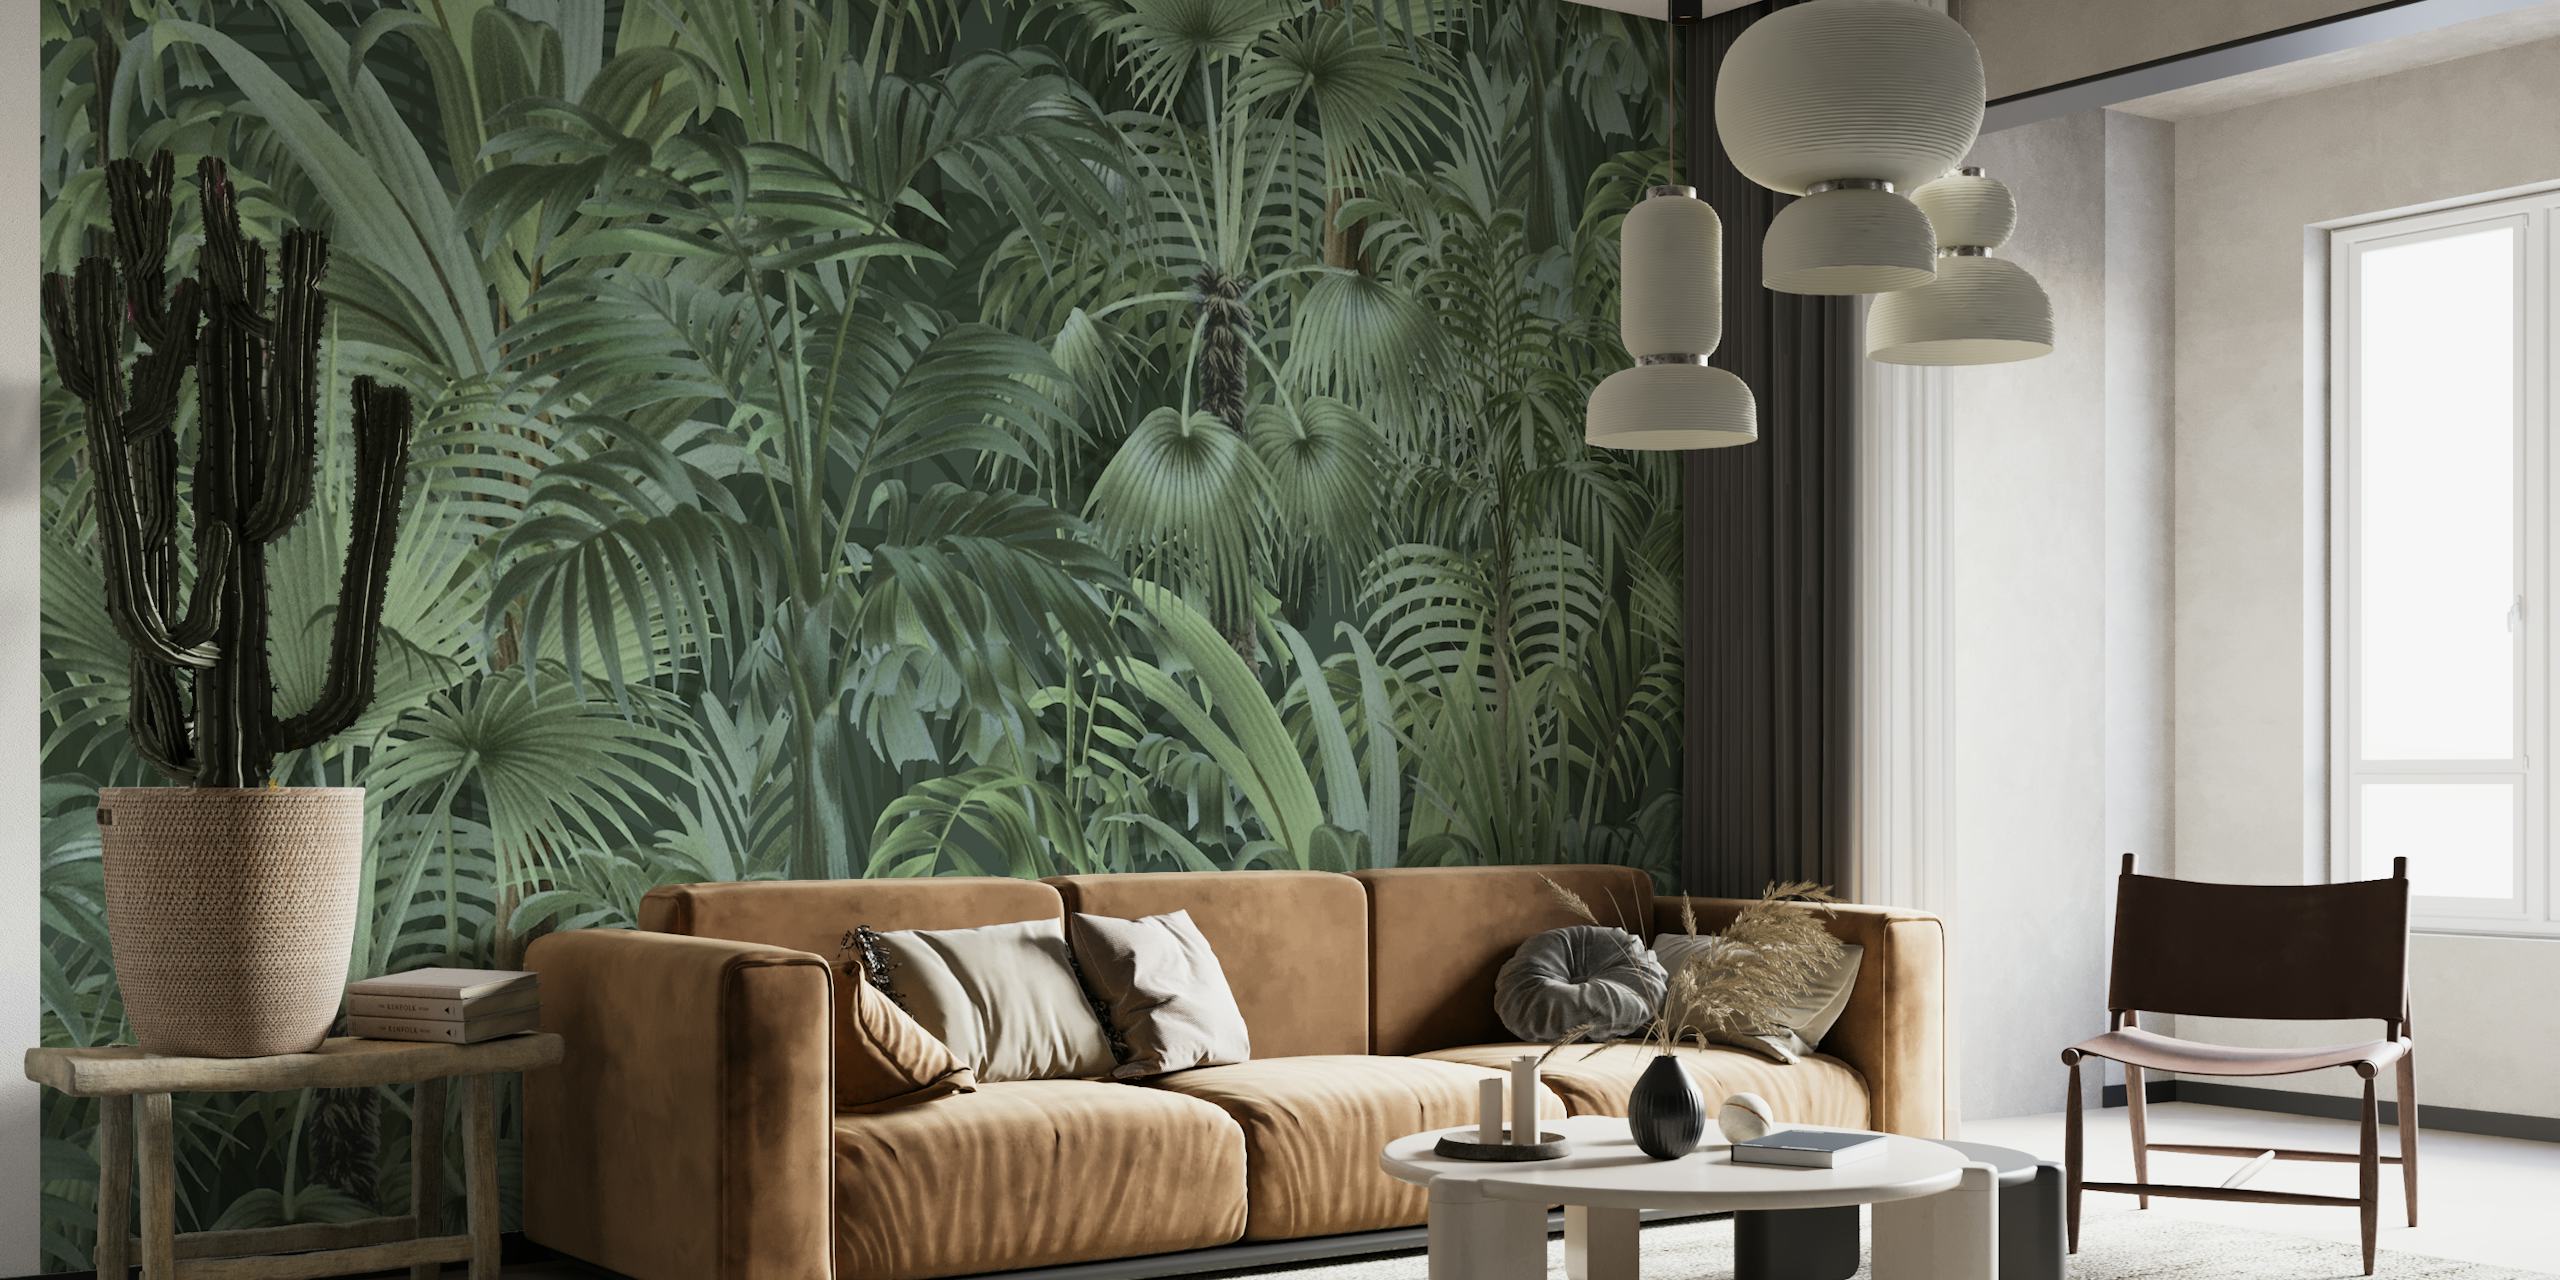 Tæt tropisk løvvægmaleri med varierende grønne nuancer, der skaber en fortryllende junglestemning.